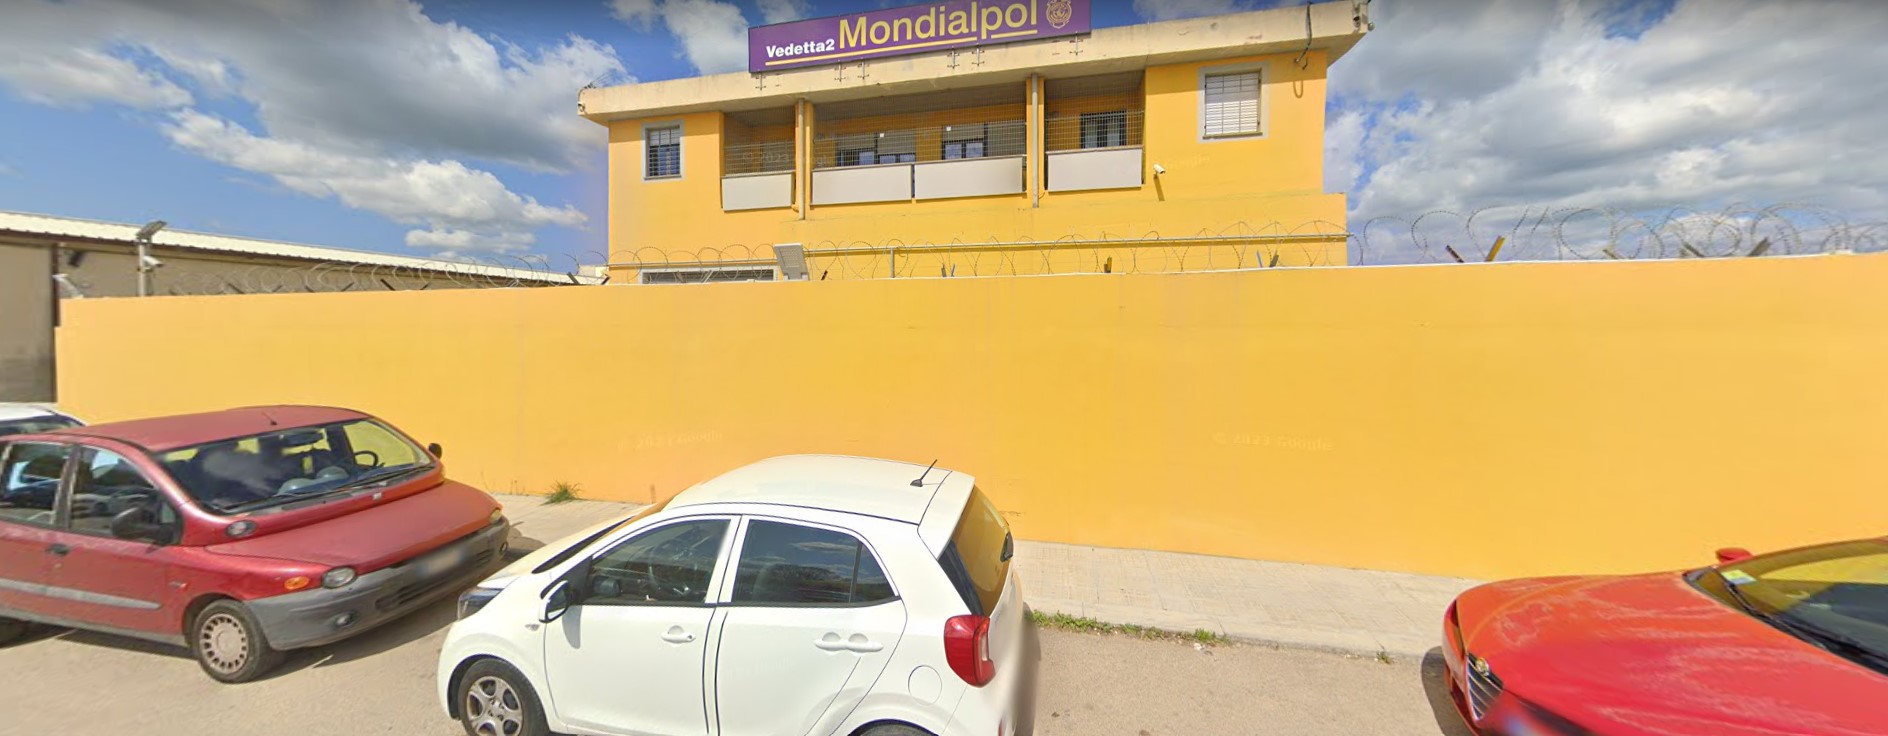 La sede della Mondialpol a Sassari in via Caniga